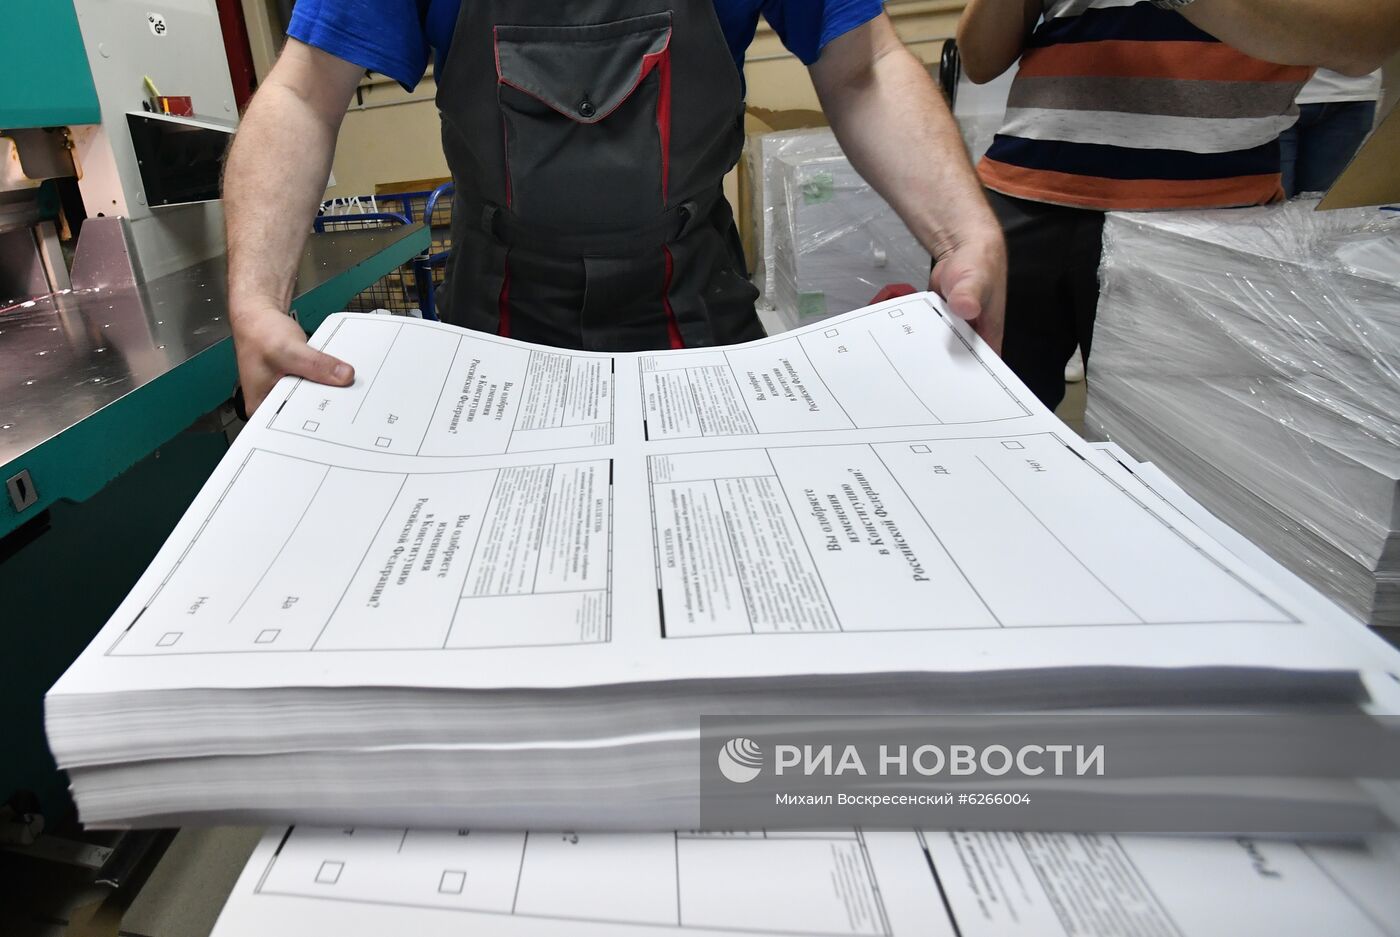 Передача бюллетеней для голосования по внесению поправок в Конституцию РФ 